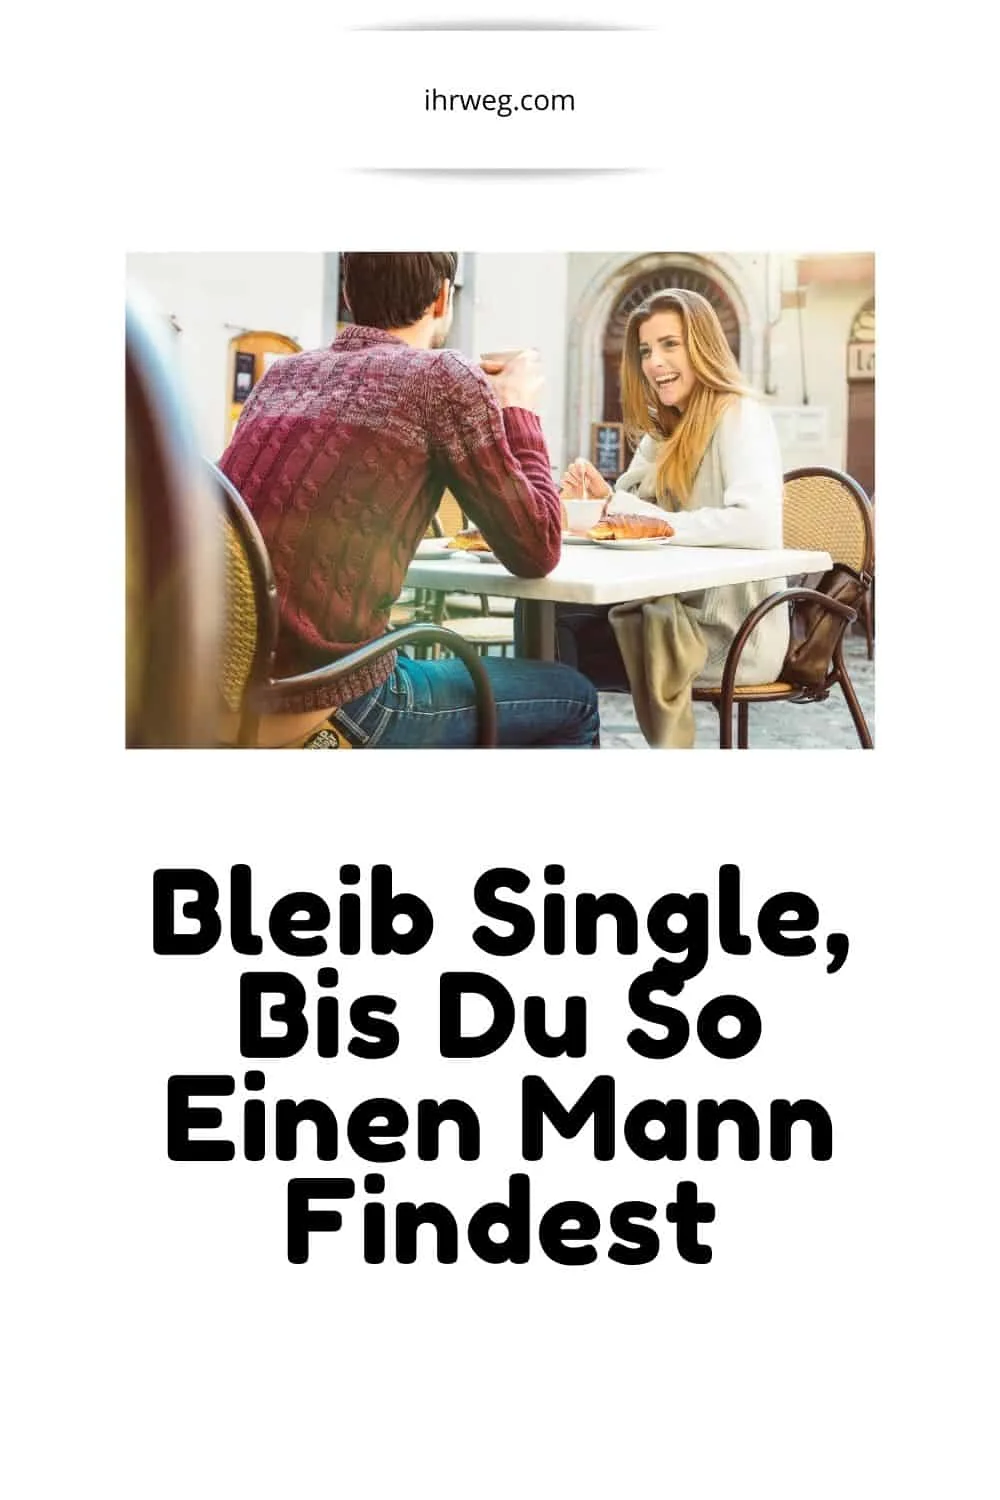 Bleib Single, Bis Du So Einen Mann Findest